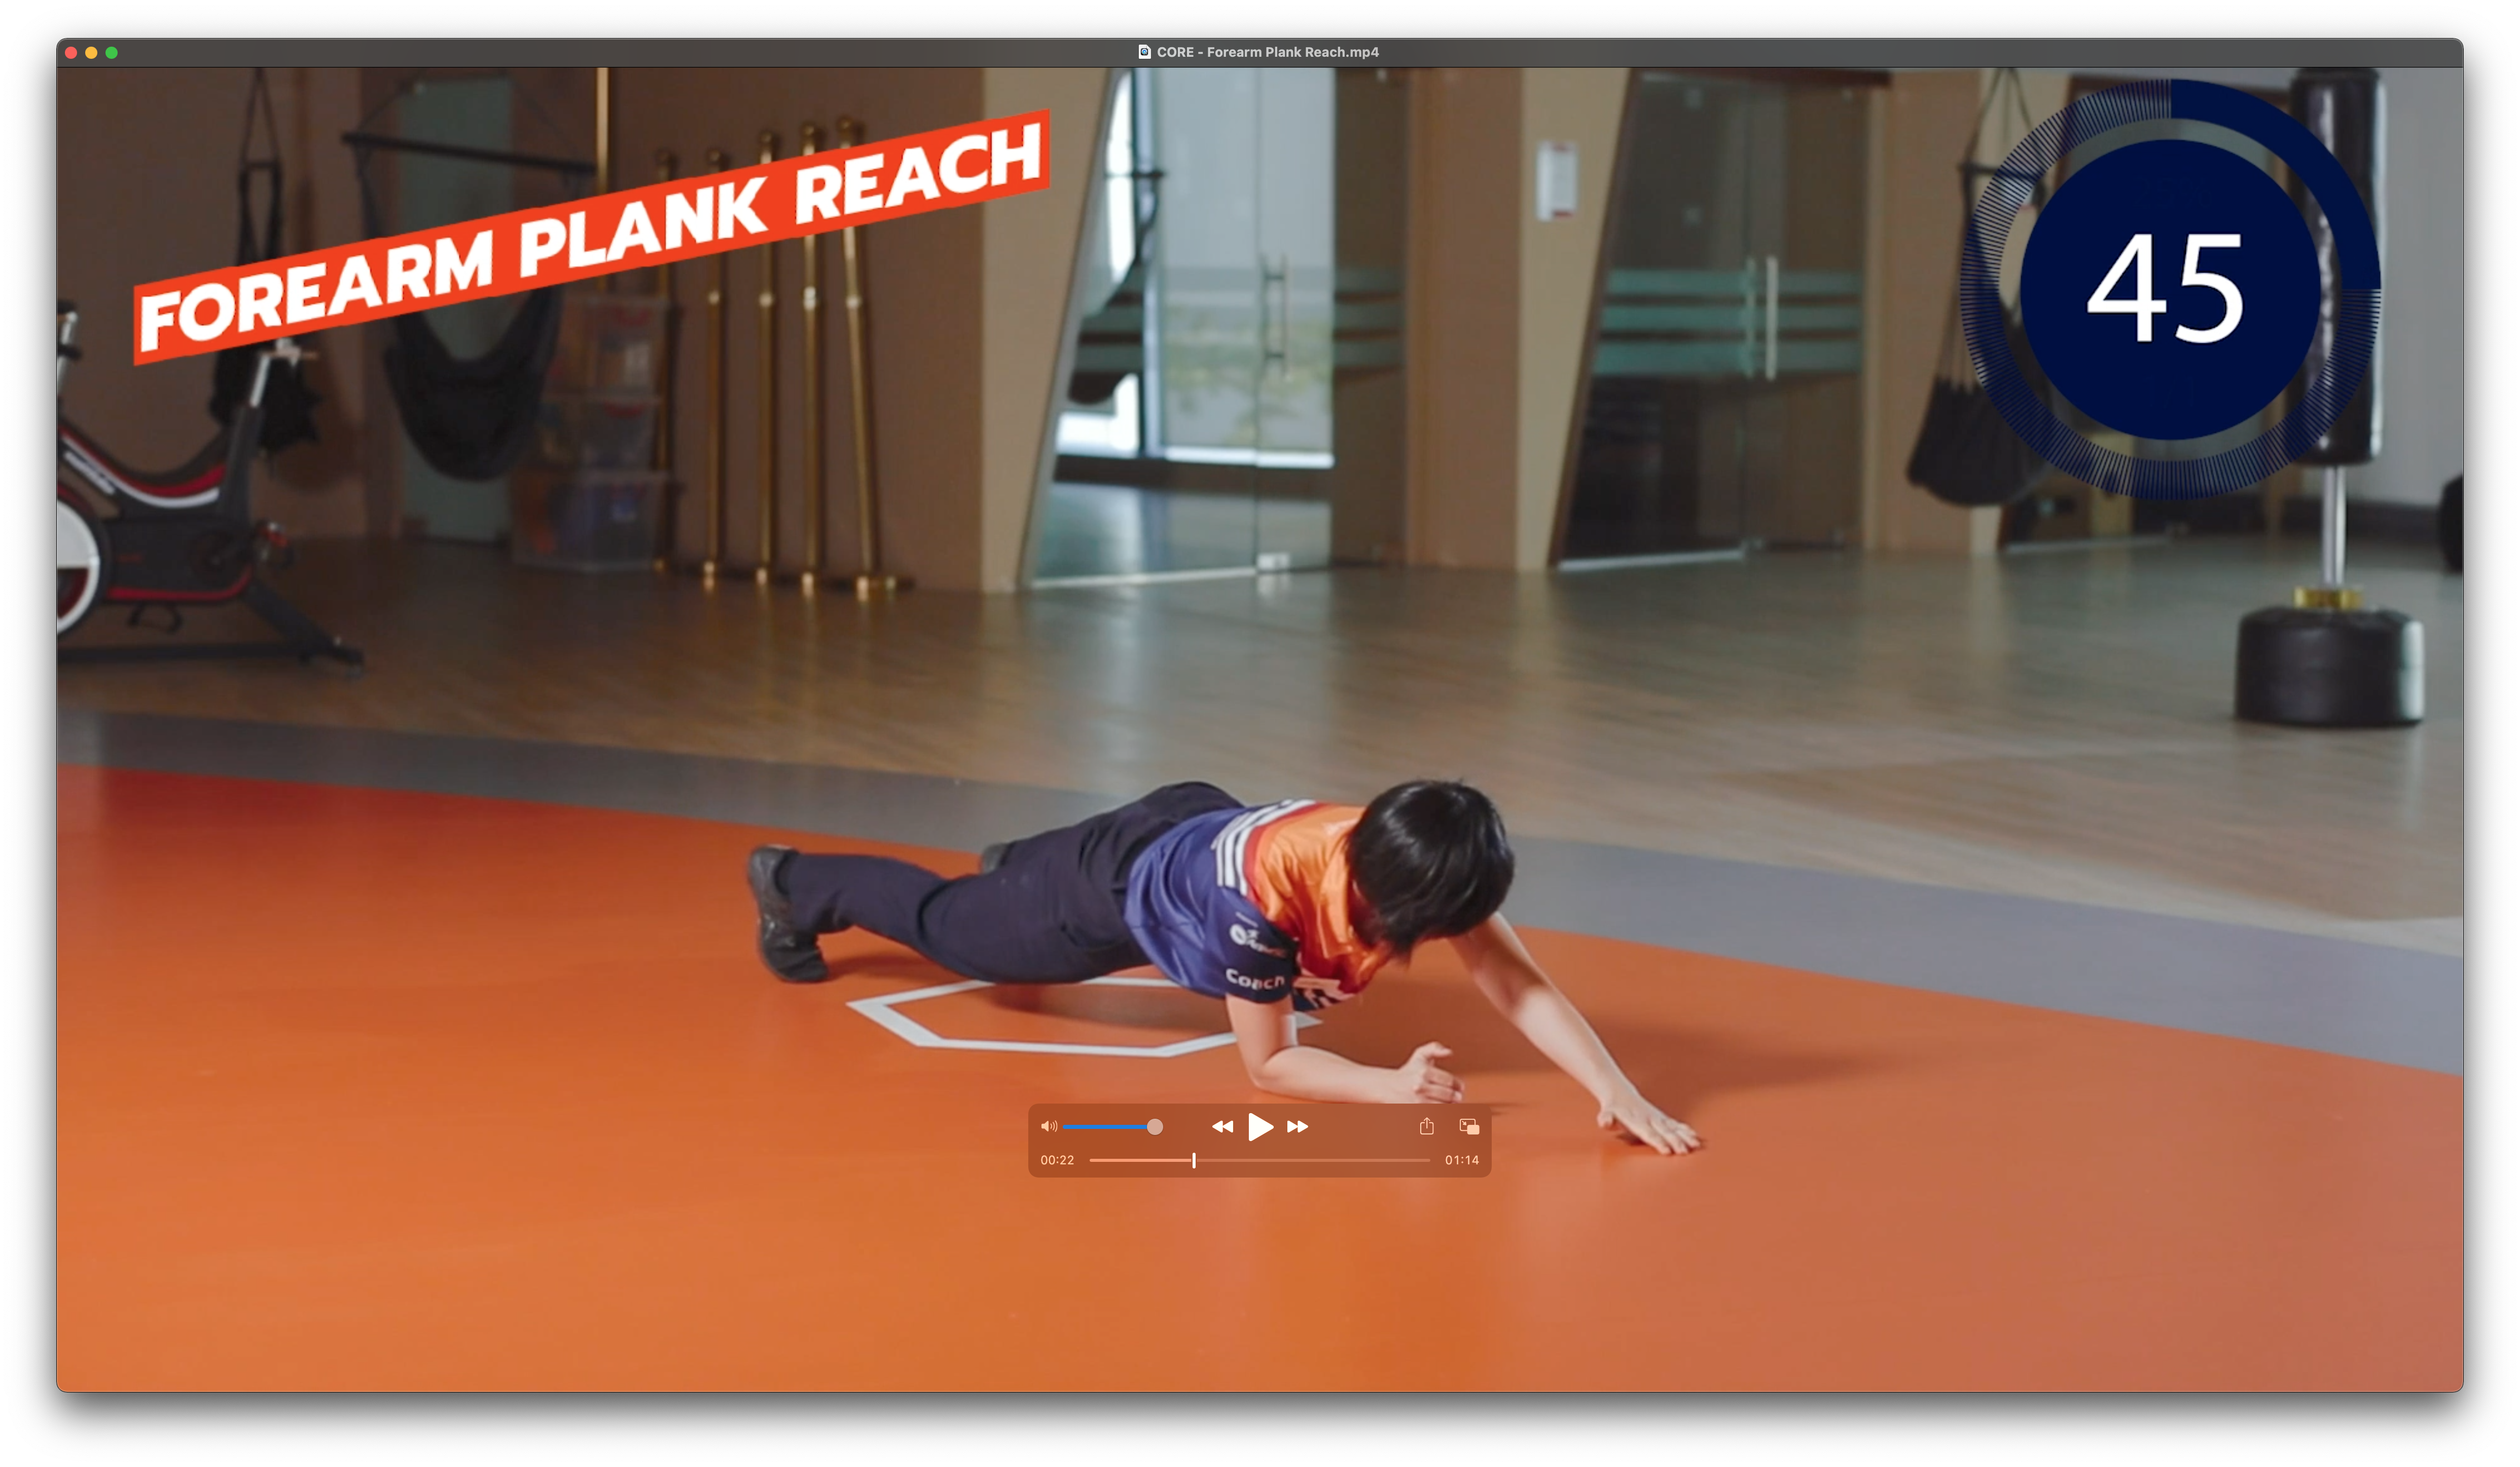 Forearm Plank Reach